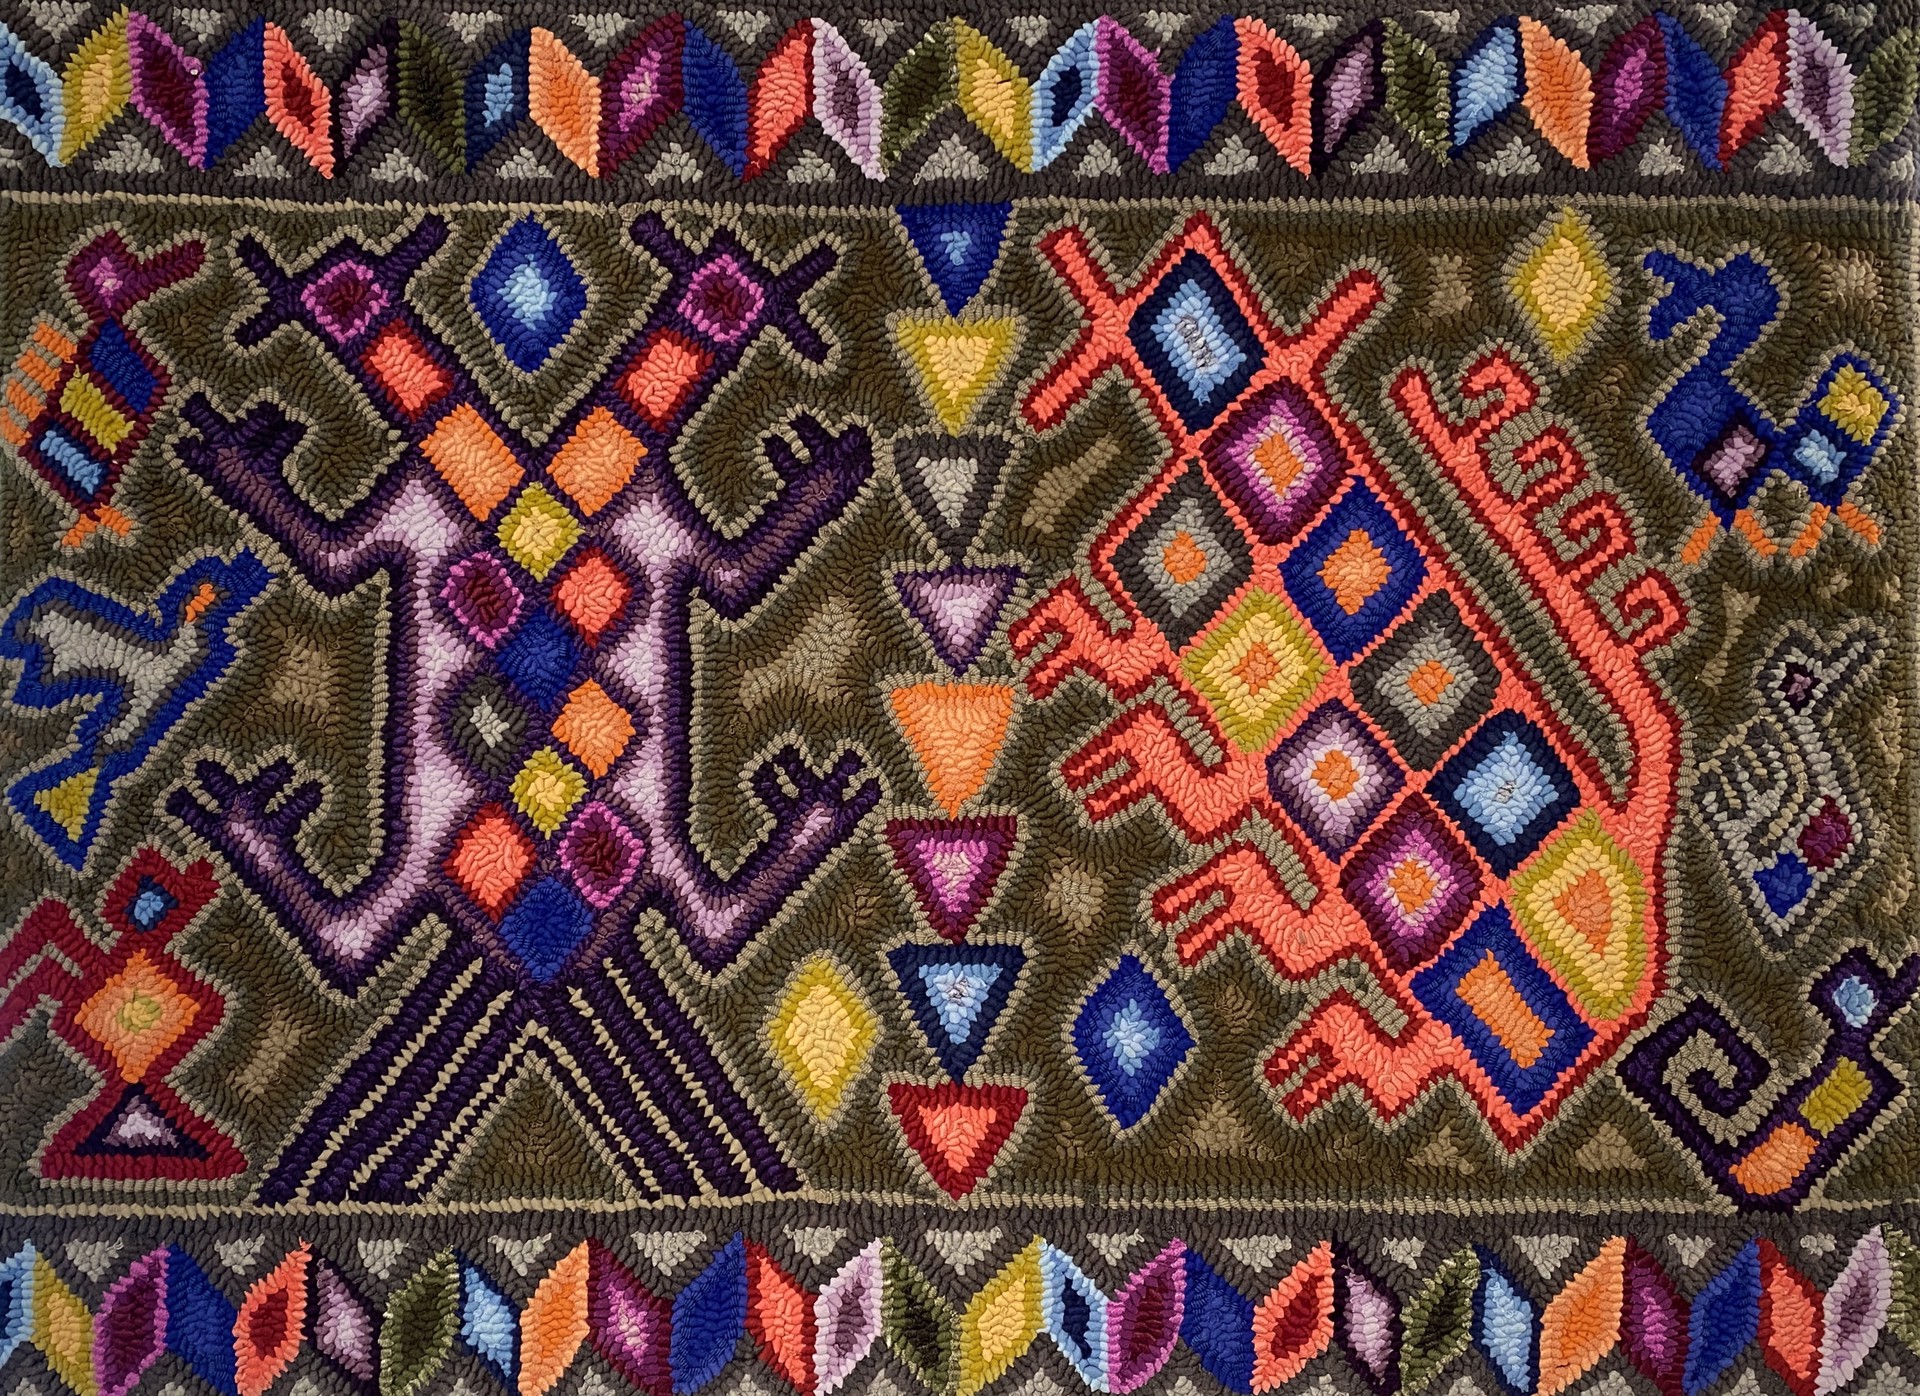 Arte de la mujer bordadora (Weaver Woman's Art) by Multicolores